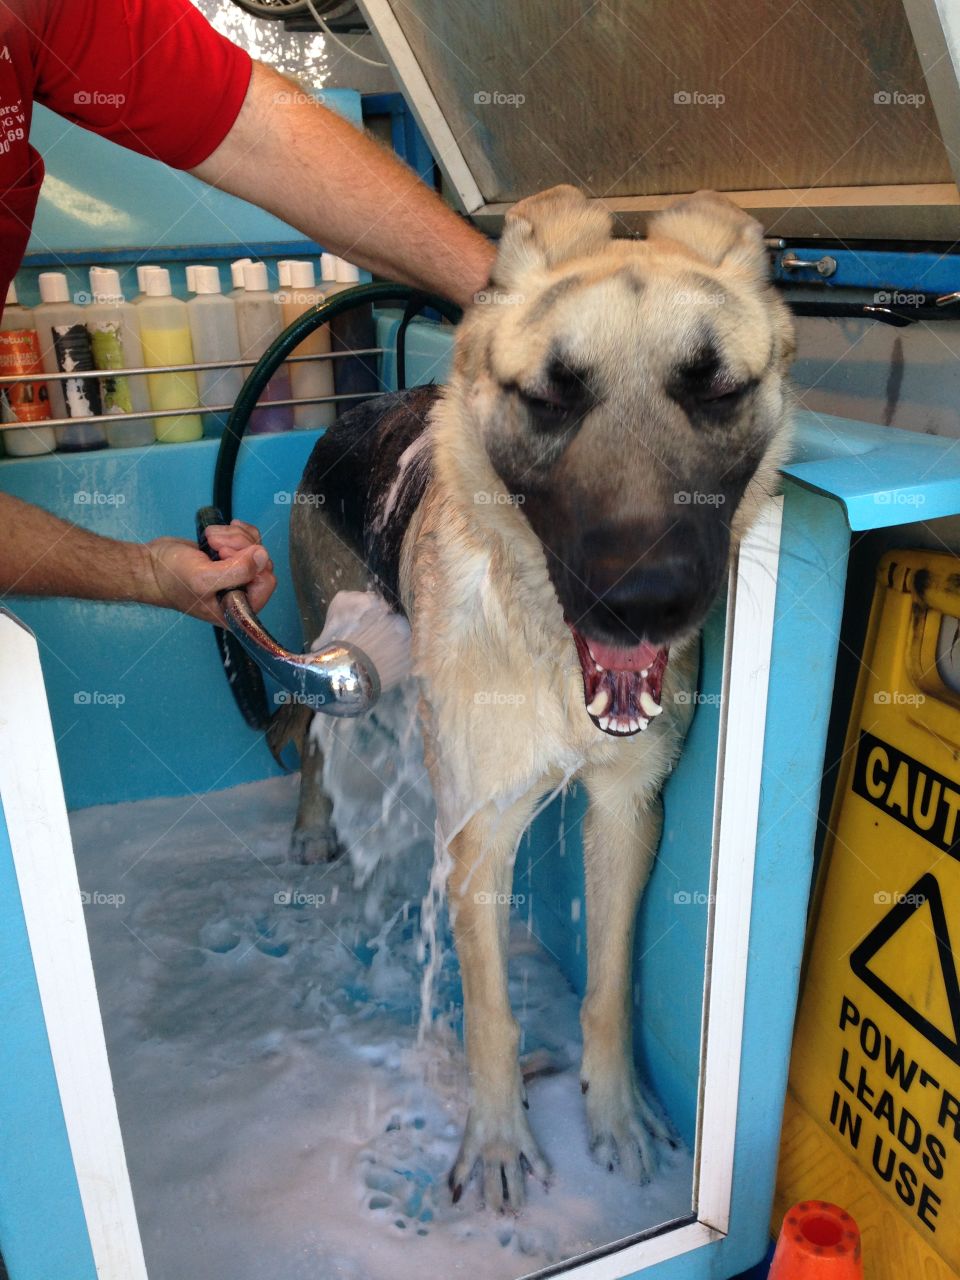 German shepherd smiling while being washed at dog wash